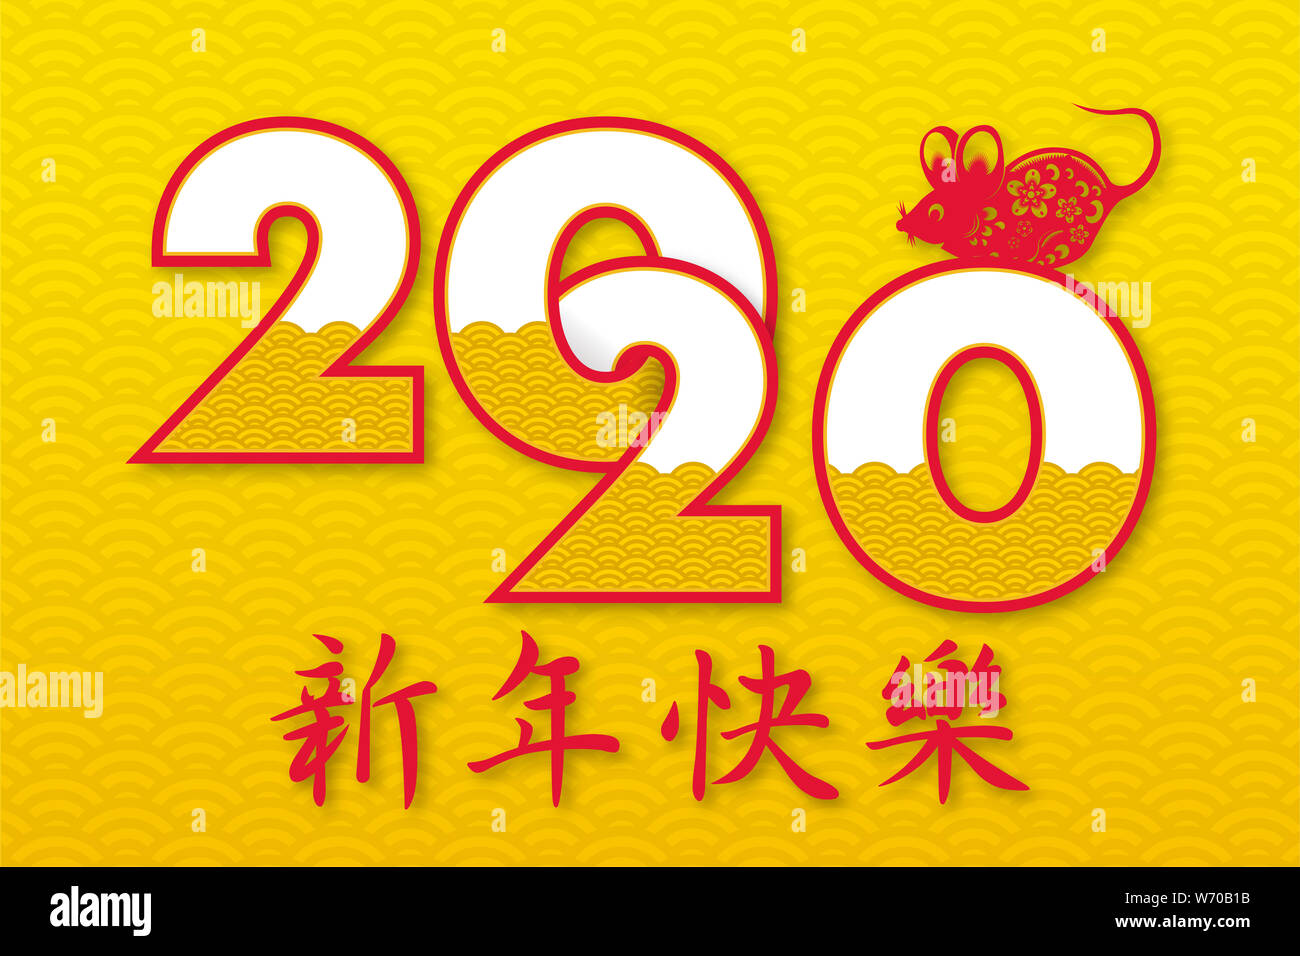 Le nouvel an chinois 2020 année du rat rat coupe papier jaune ,caractère et des éléments d'Asie (style traduction chinoise : Joyeux Nouvel An chinois 2020, oui Banque D'Images